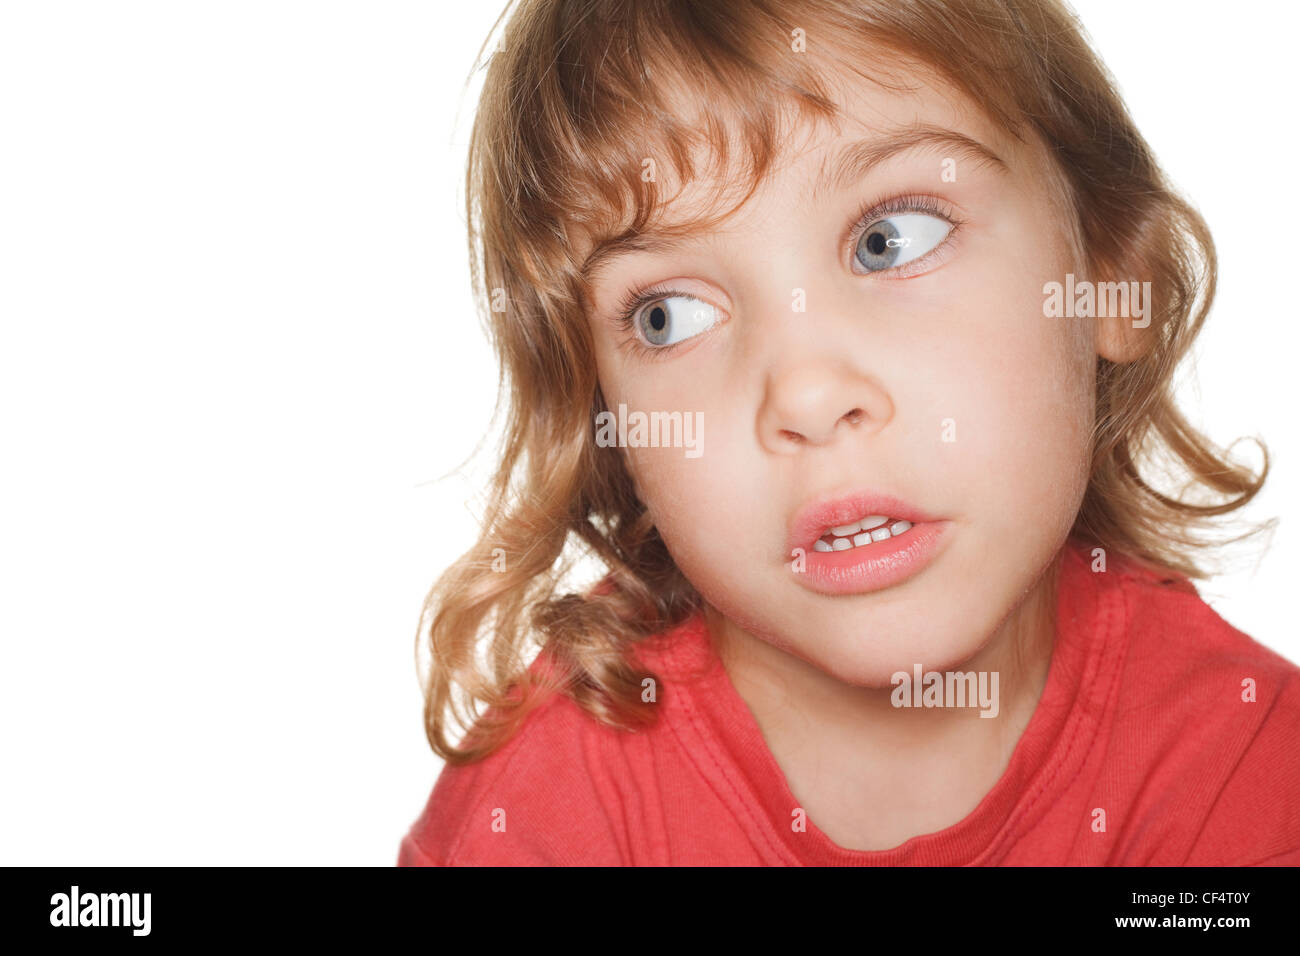 Porträt Kleinkind in einem roten T-shirt Fotostudio sprechen und schauen nach links. Ringblitz Stockfoto